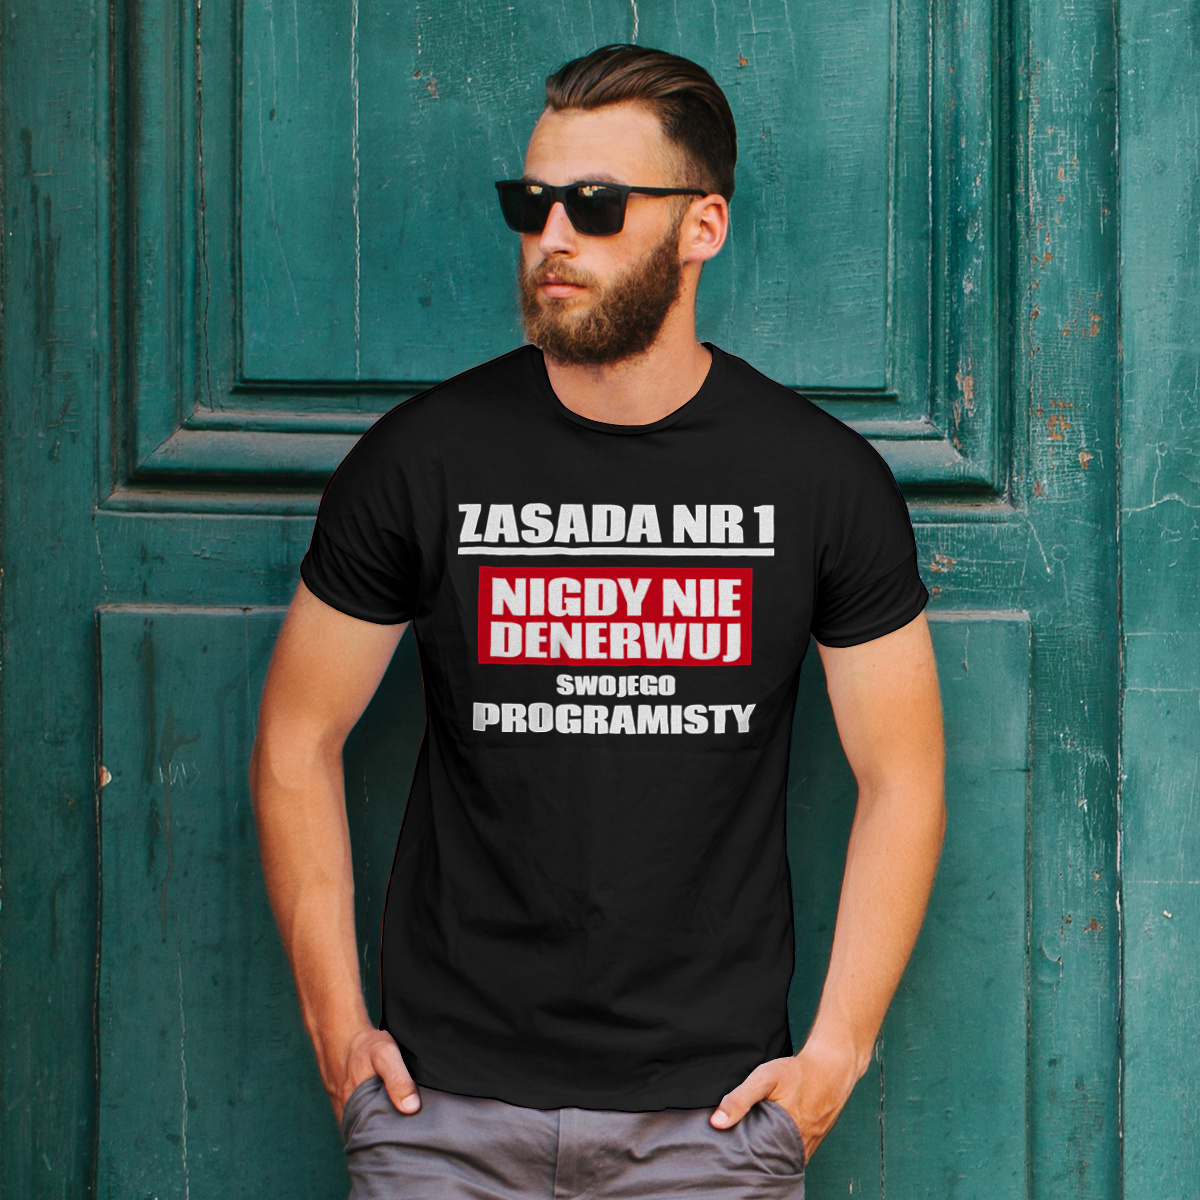 Zasada Nr 1 - Nigdy Nie Denerwuj Swojego Programisty - Męska Koszulka Czarna